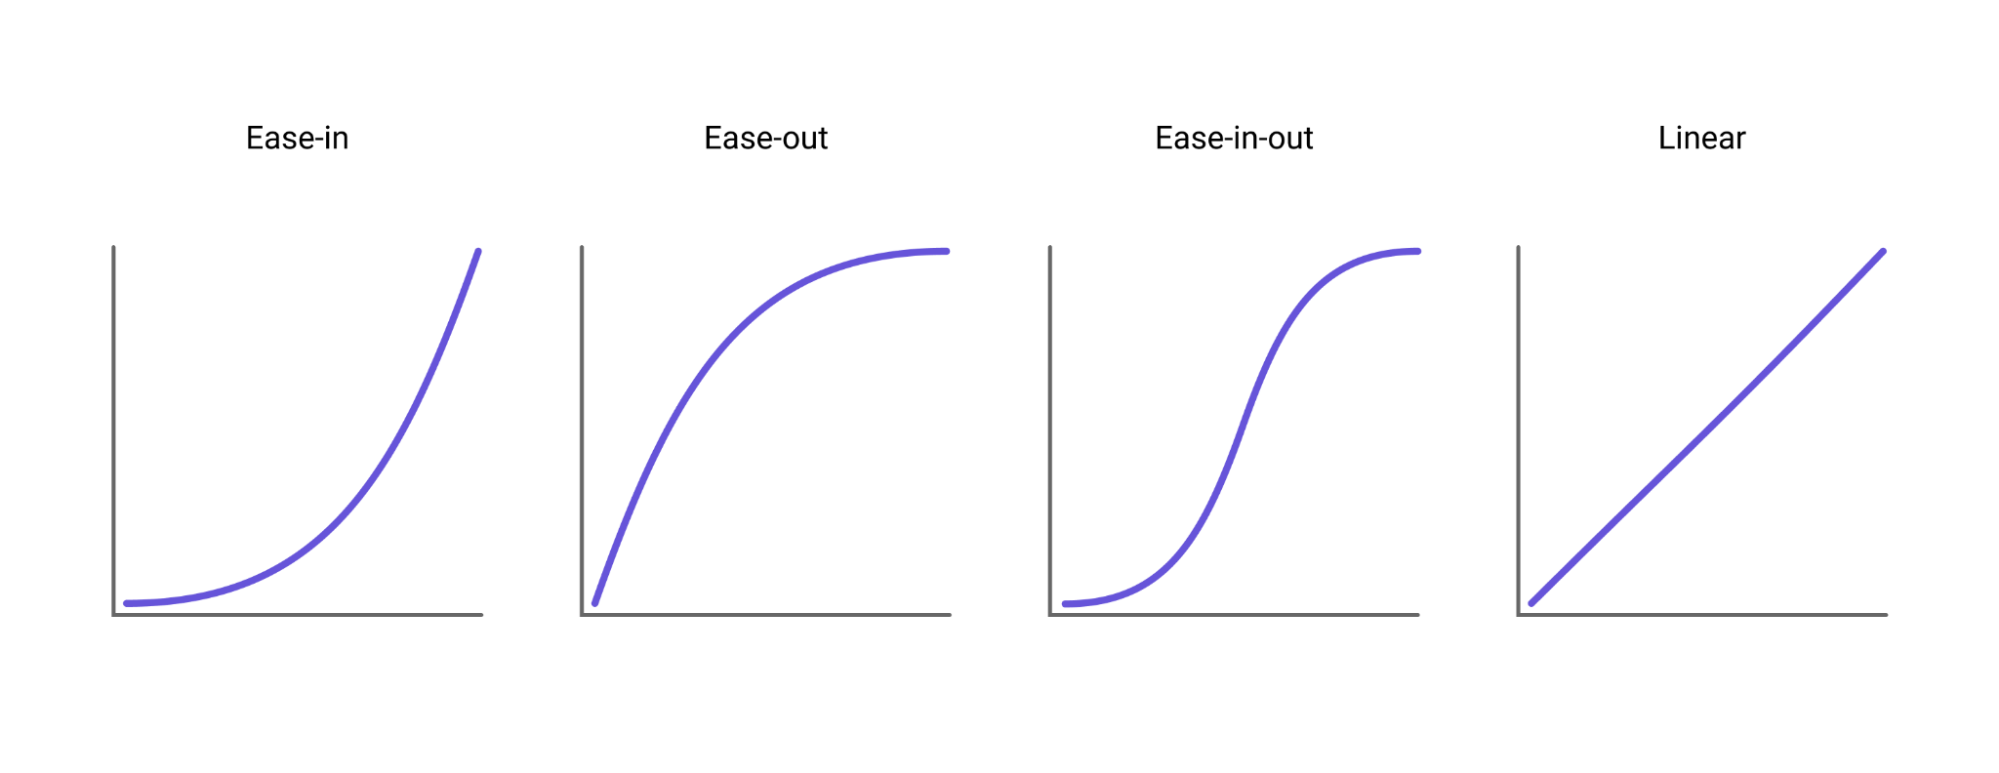 Самые распространенные кривые анимации. Кривая показывает, как изменяется параметр (ось y) в зависимости от времени (ось x).